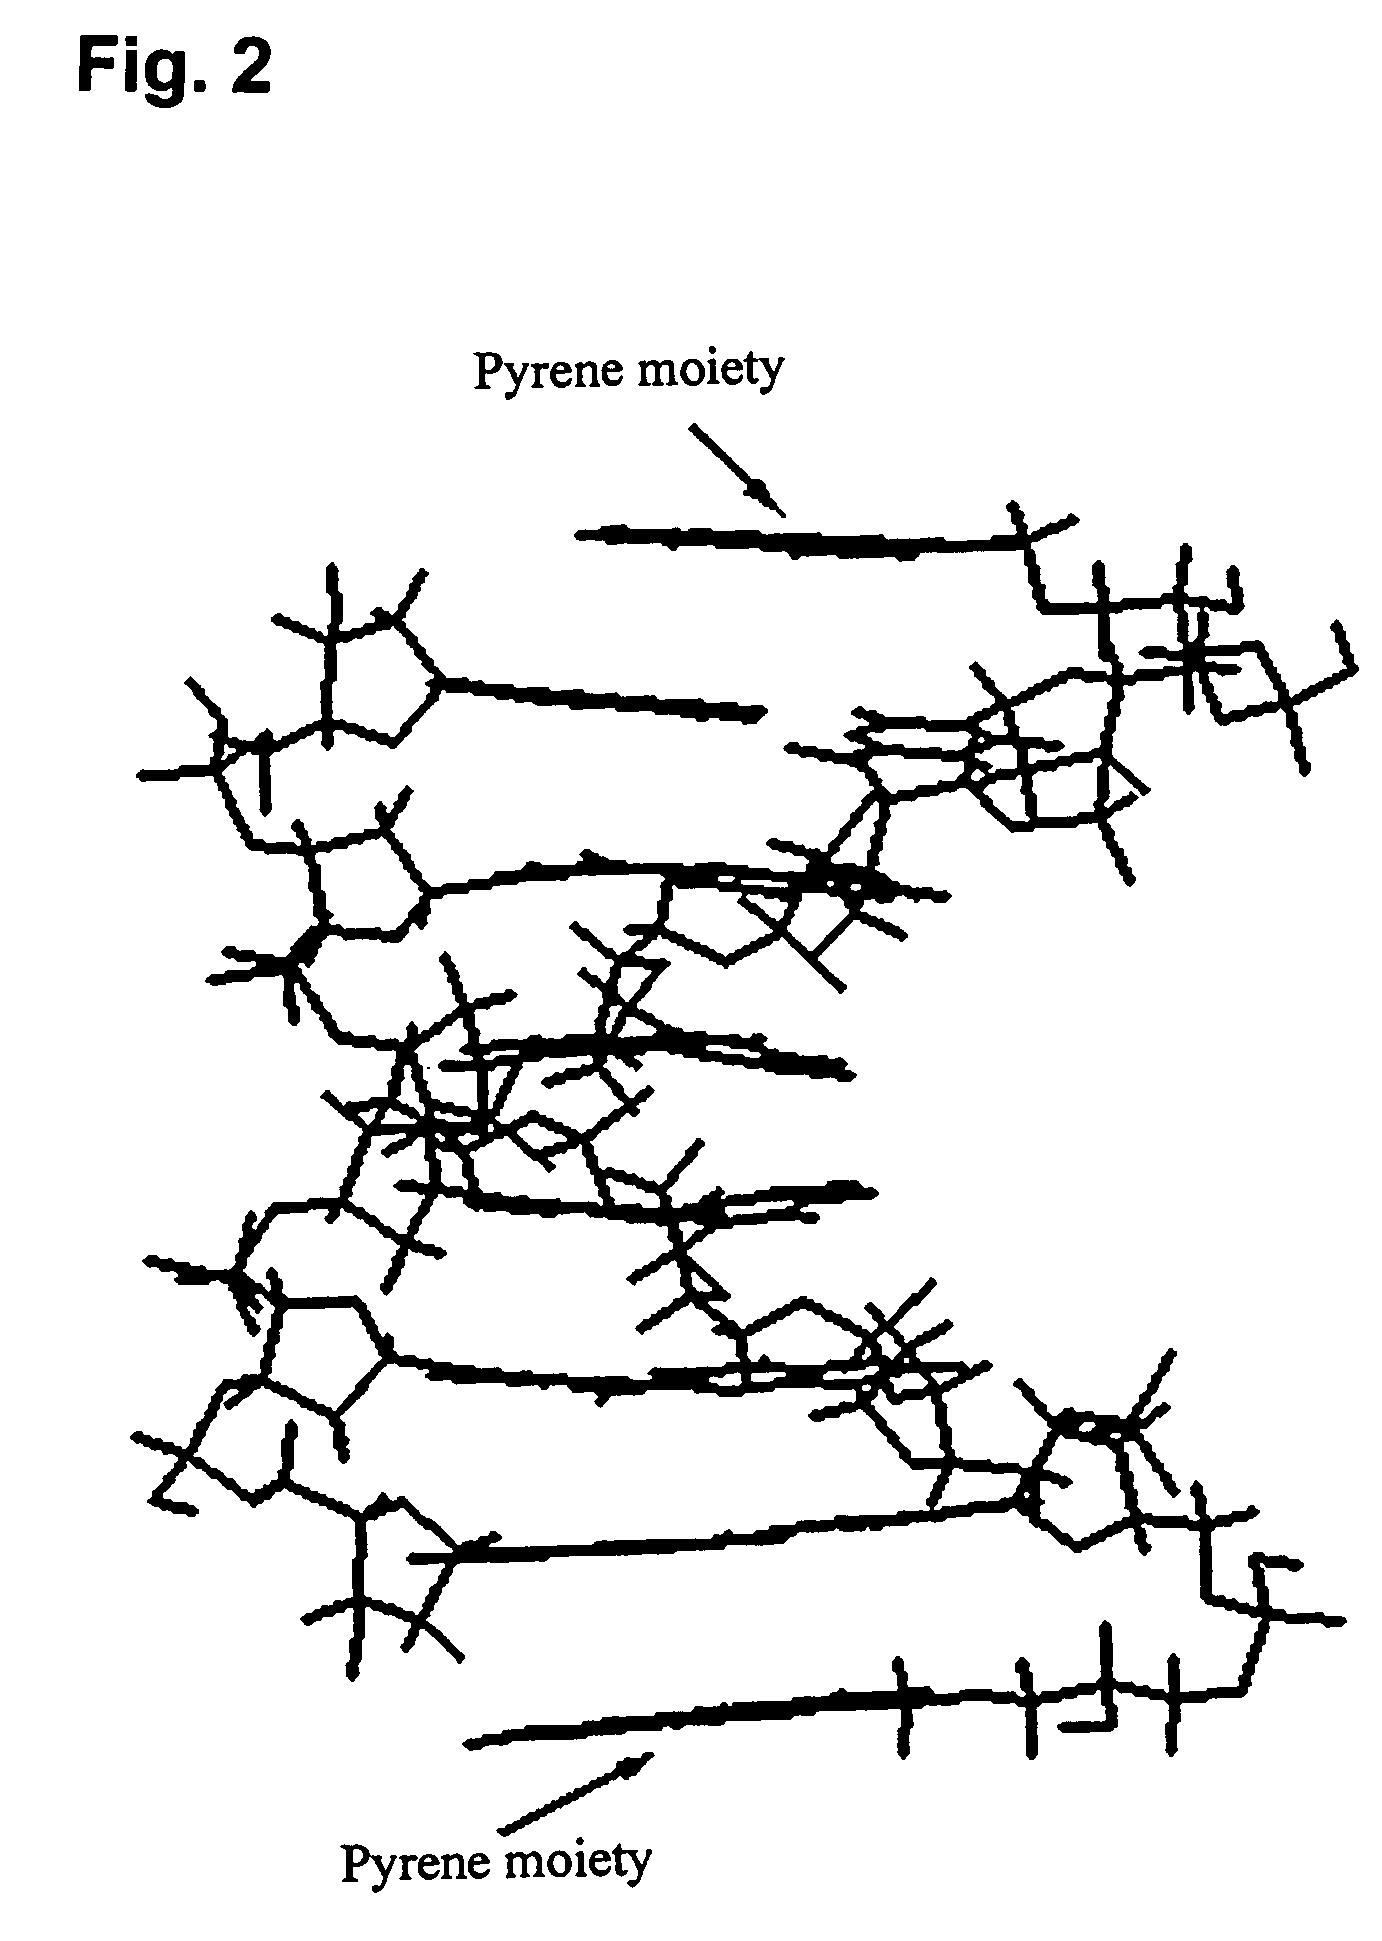 Pseudonucleotide comprising an intercalator